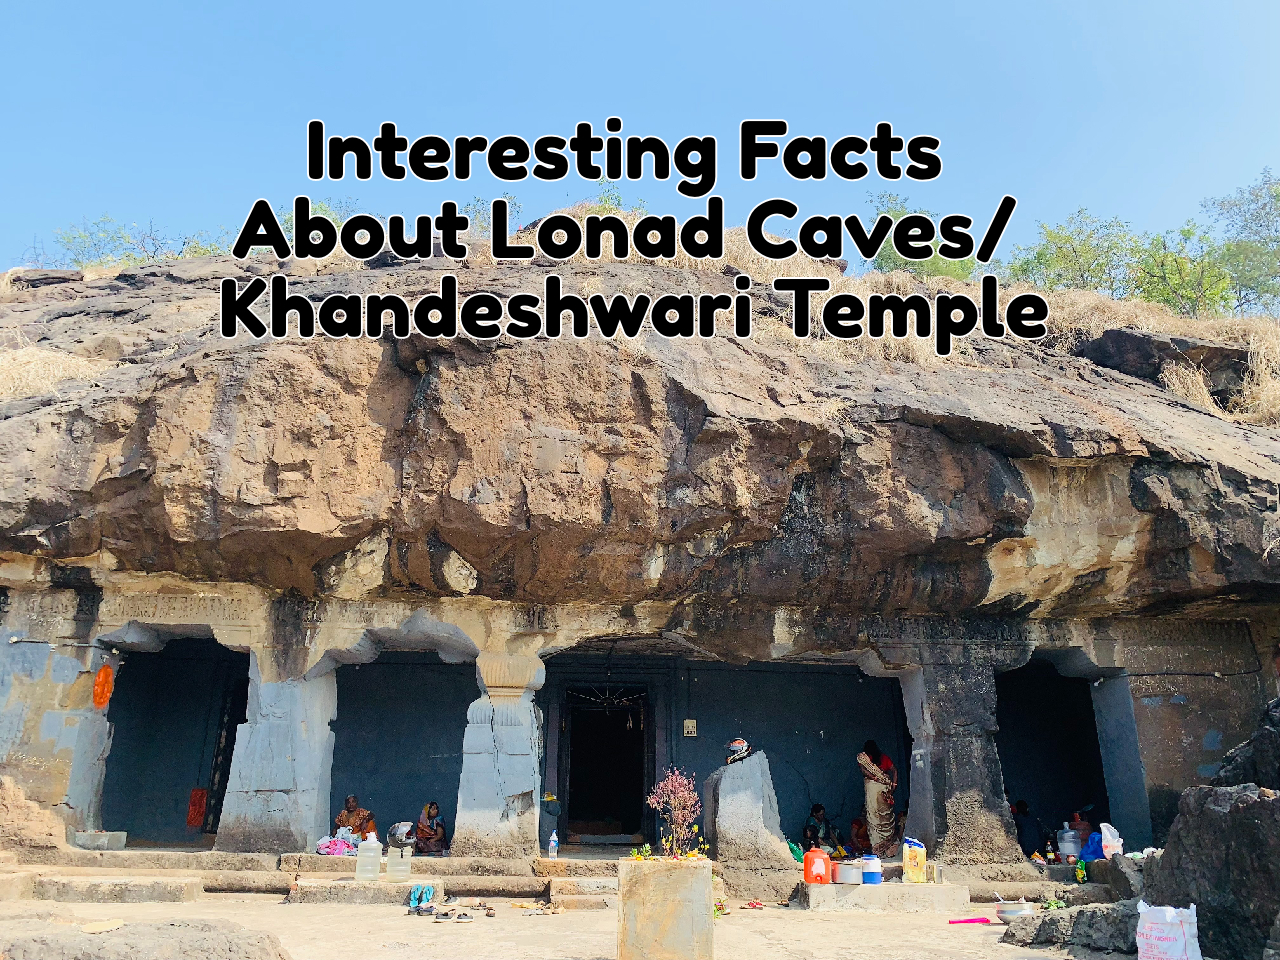 Lonad_Caves_Khandeshwari_Temple_Travellersofindia.com